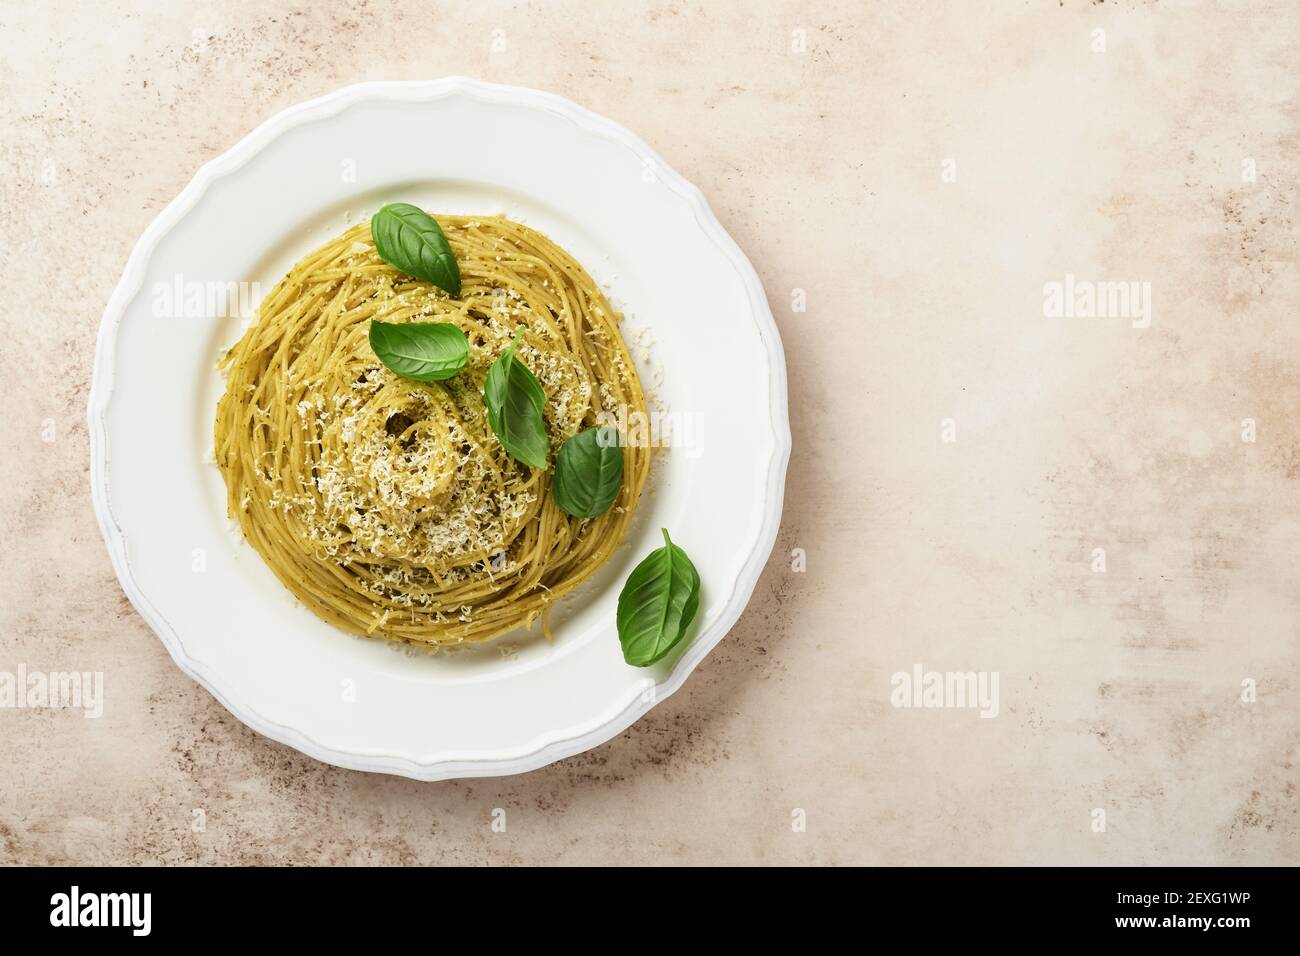 Espaguetis de pasta con salsa de pesto y hojas frescas de albahaca en un tazón blanco. Fondo gris. Se burlan. Vista superior. Foto de stock